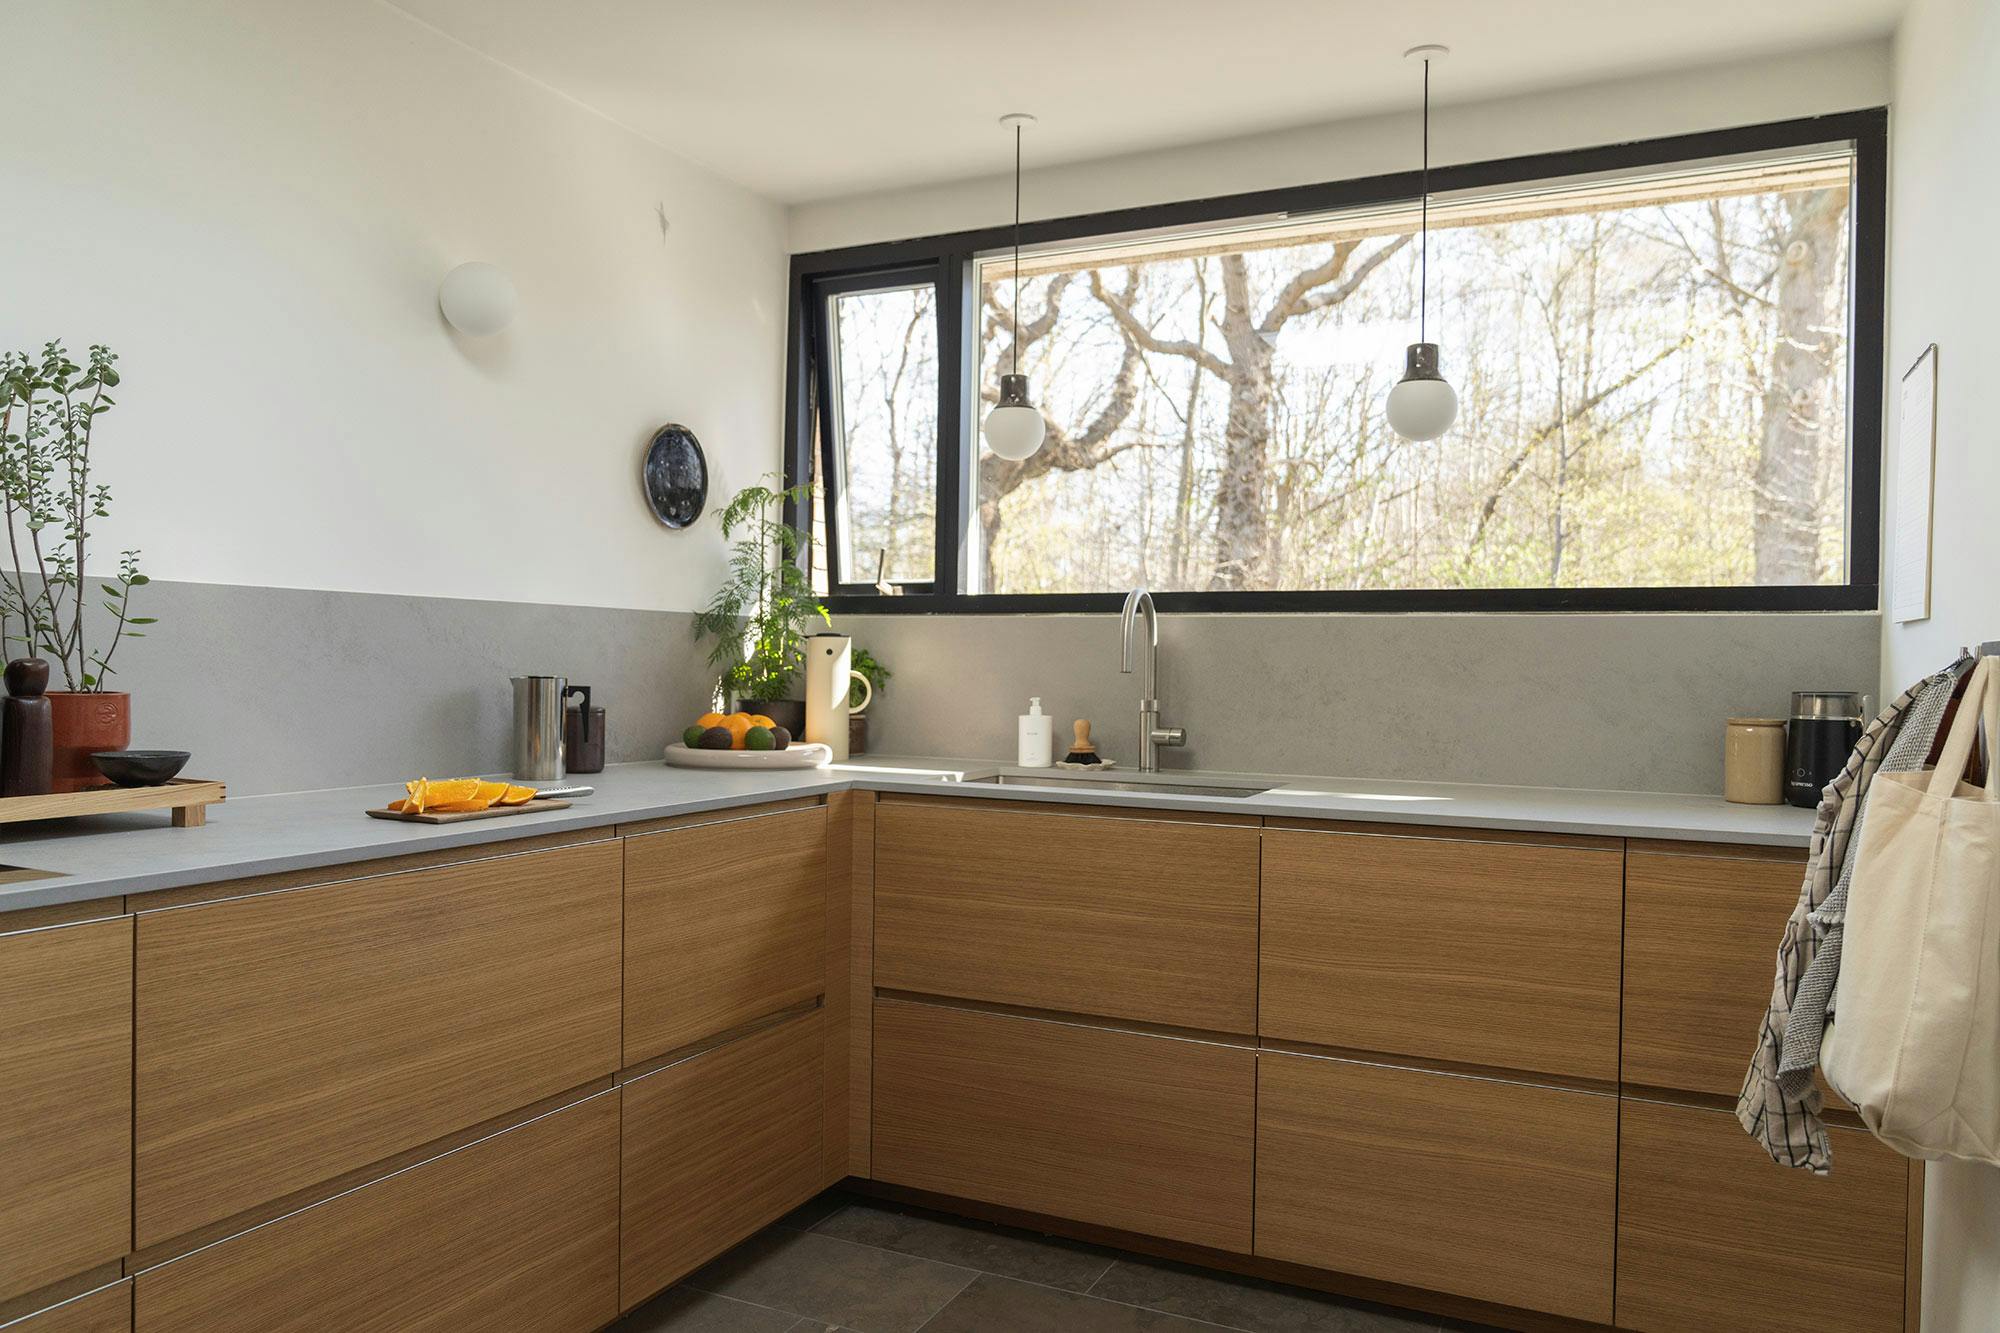 Numéro d'image 46 de la section actuelle de DKTN Arga creates an elegant atmosphere in this open plan kitchen with a minimalist approach de Cosentino France